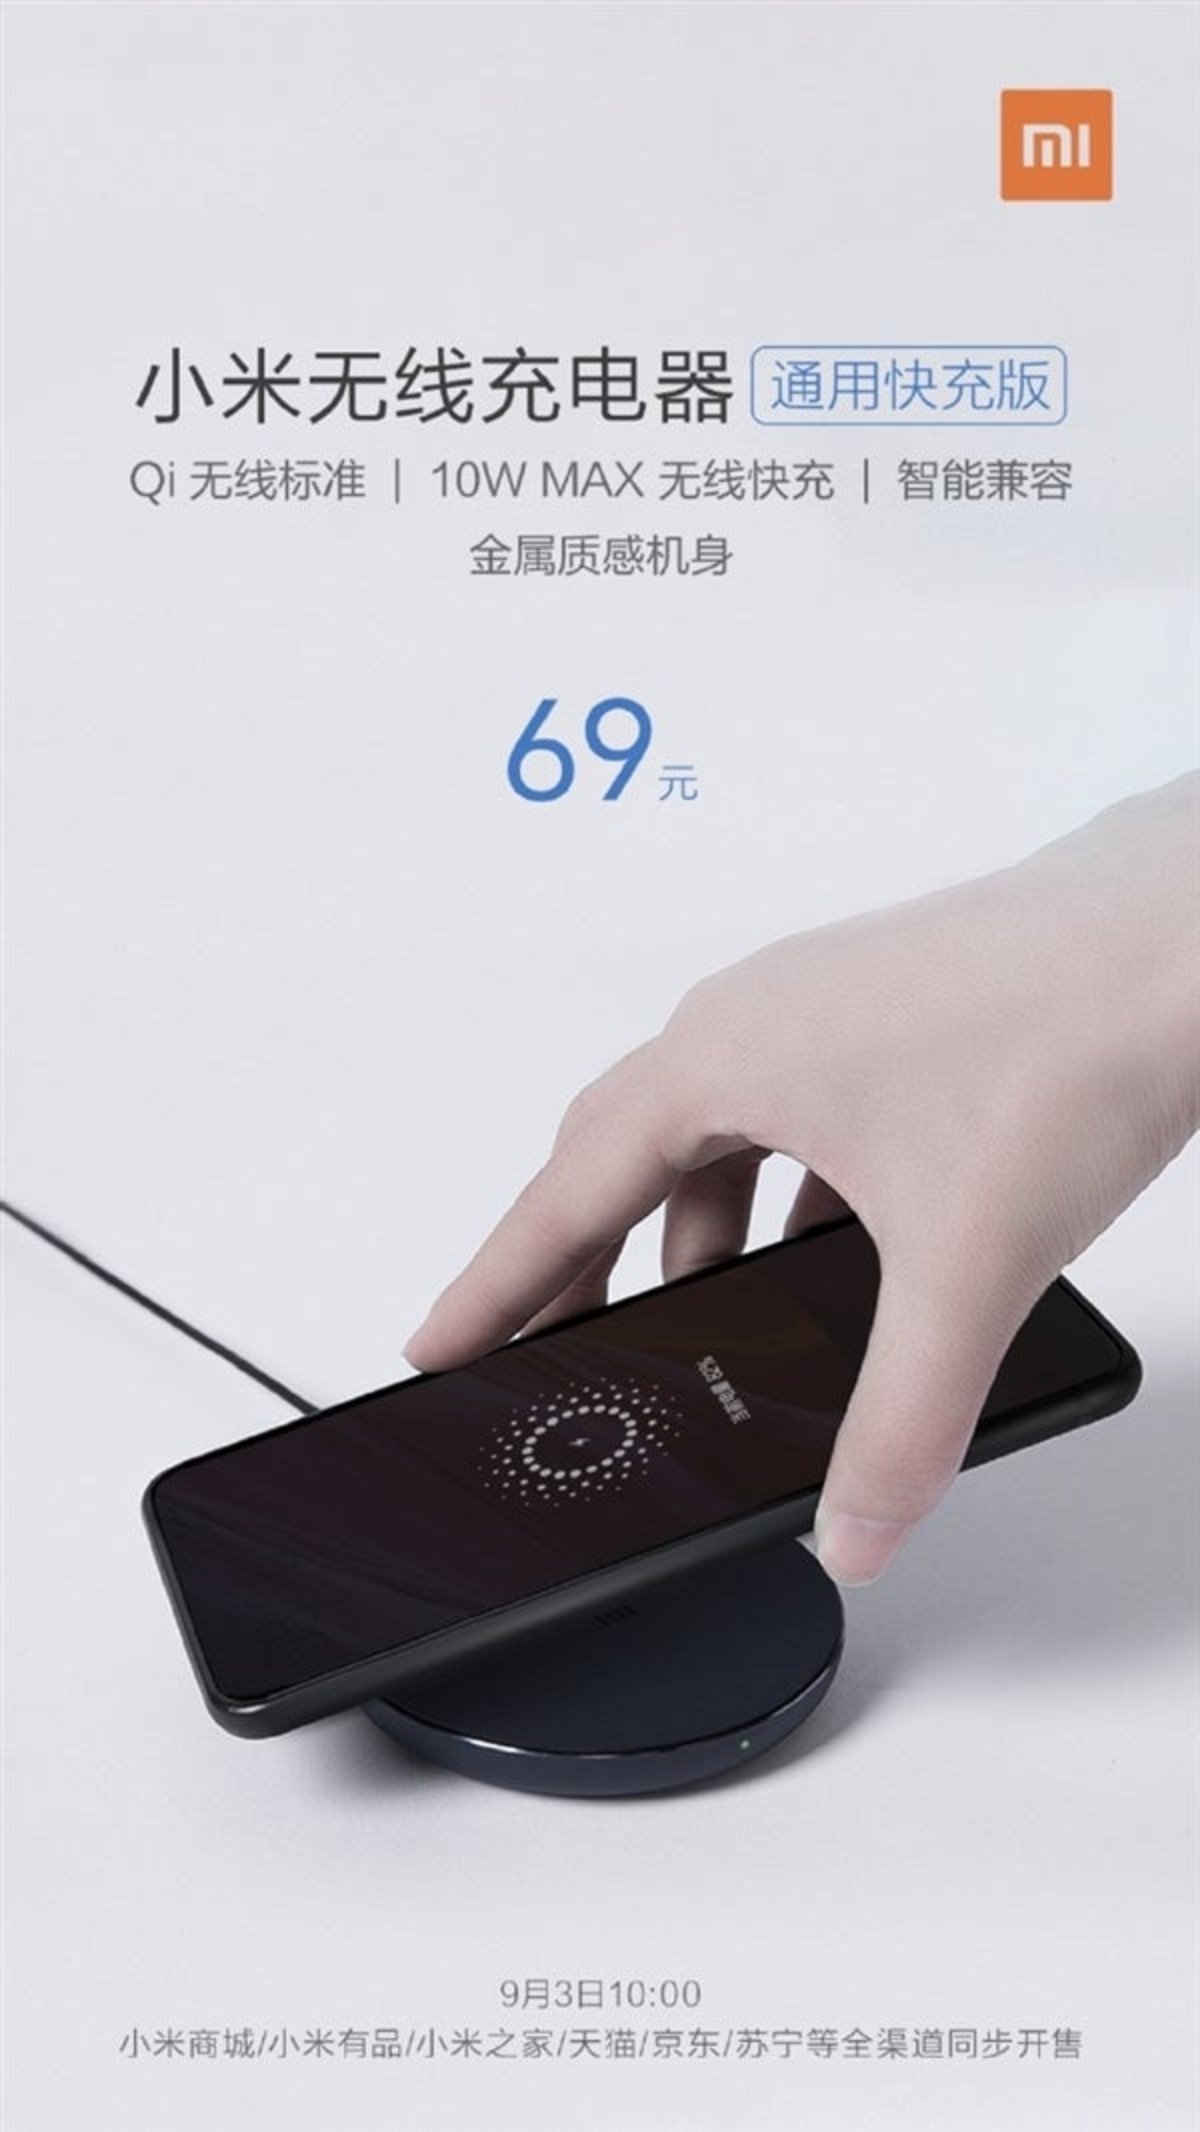 Si tu móvil tiene carga inalámbrica, este cargador de Xiaomi es perfecto para ti